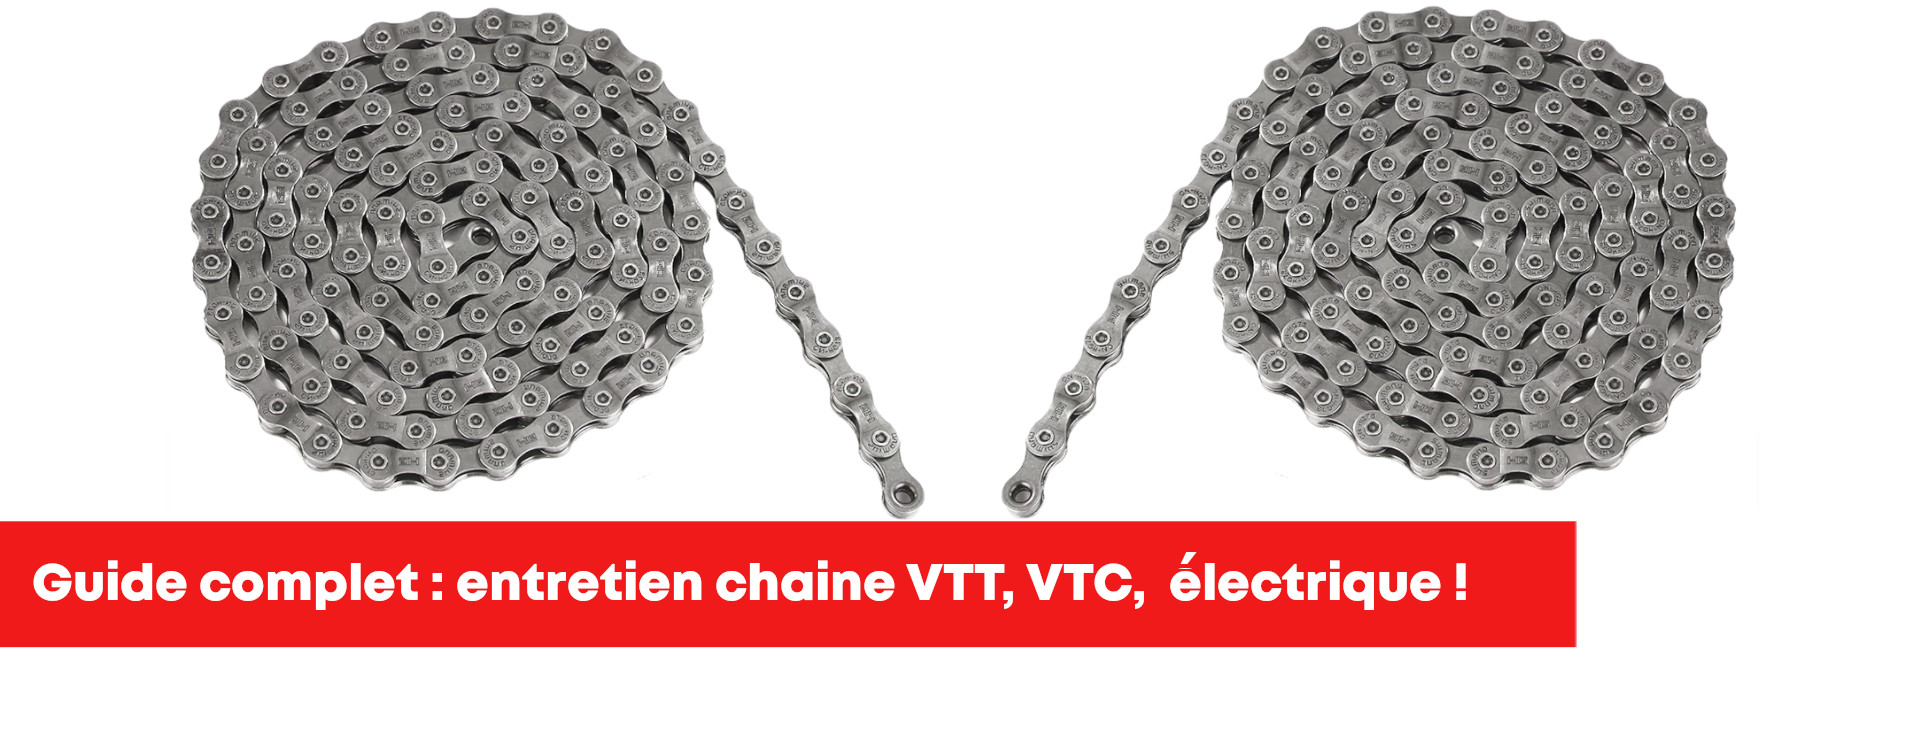 Comment entretenir sa chaîne VTT, VTC, vélo électrique ?